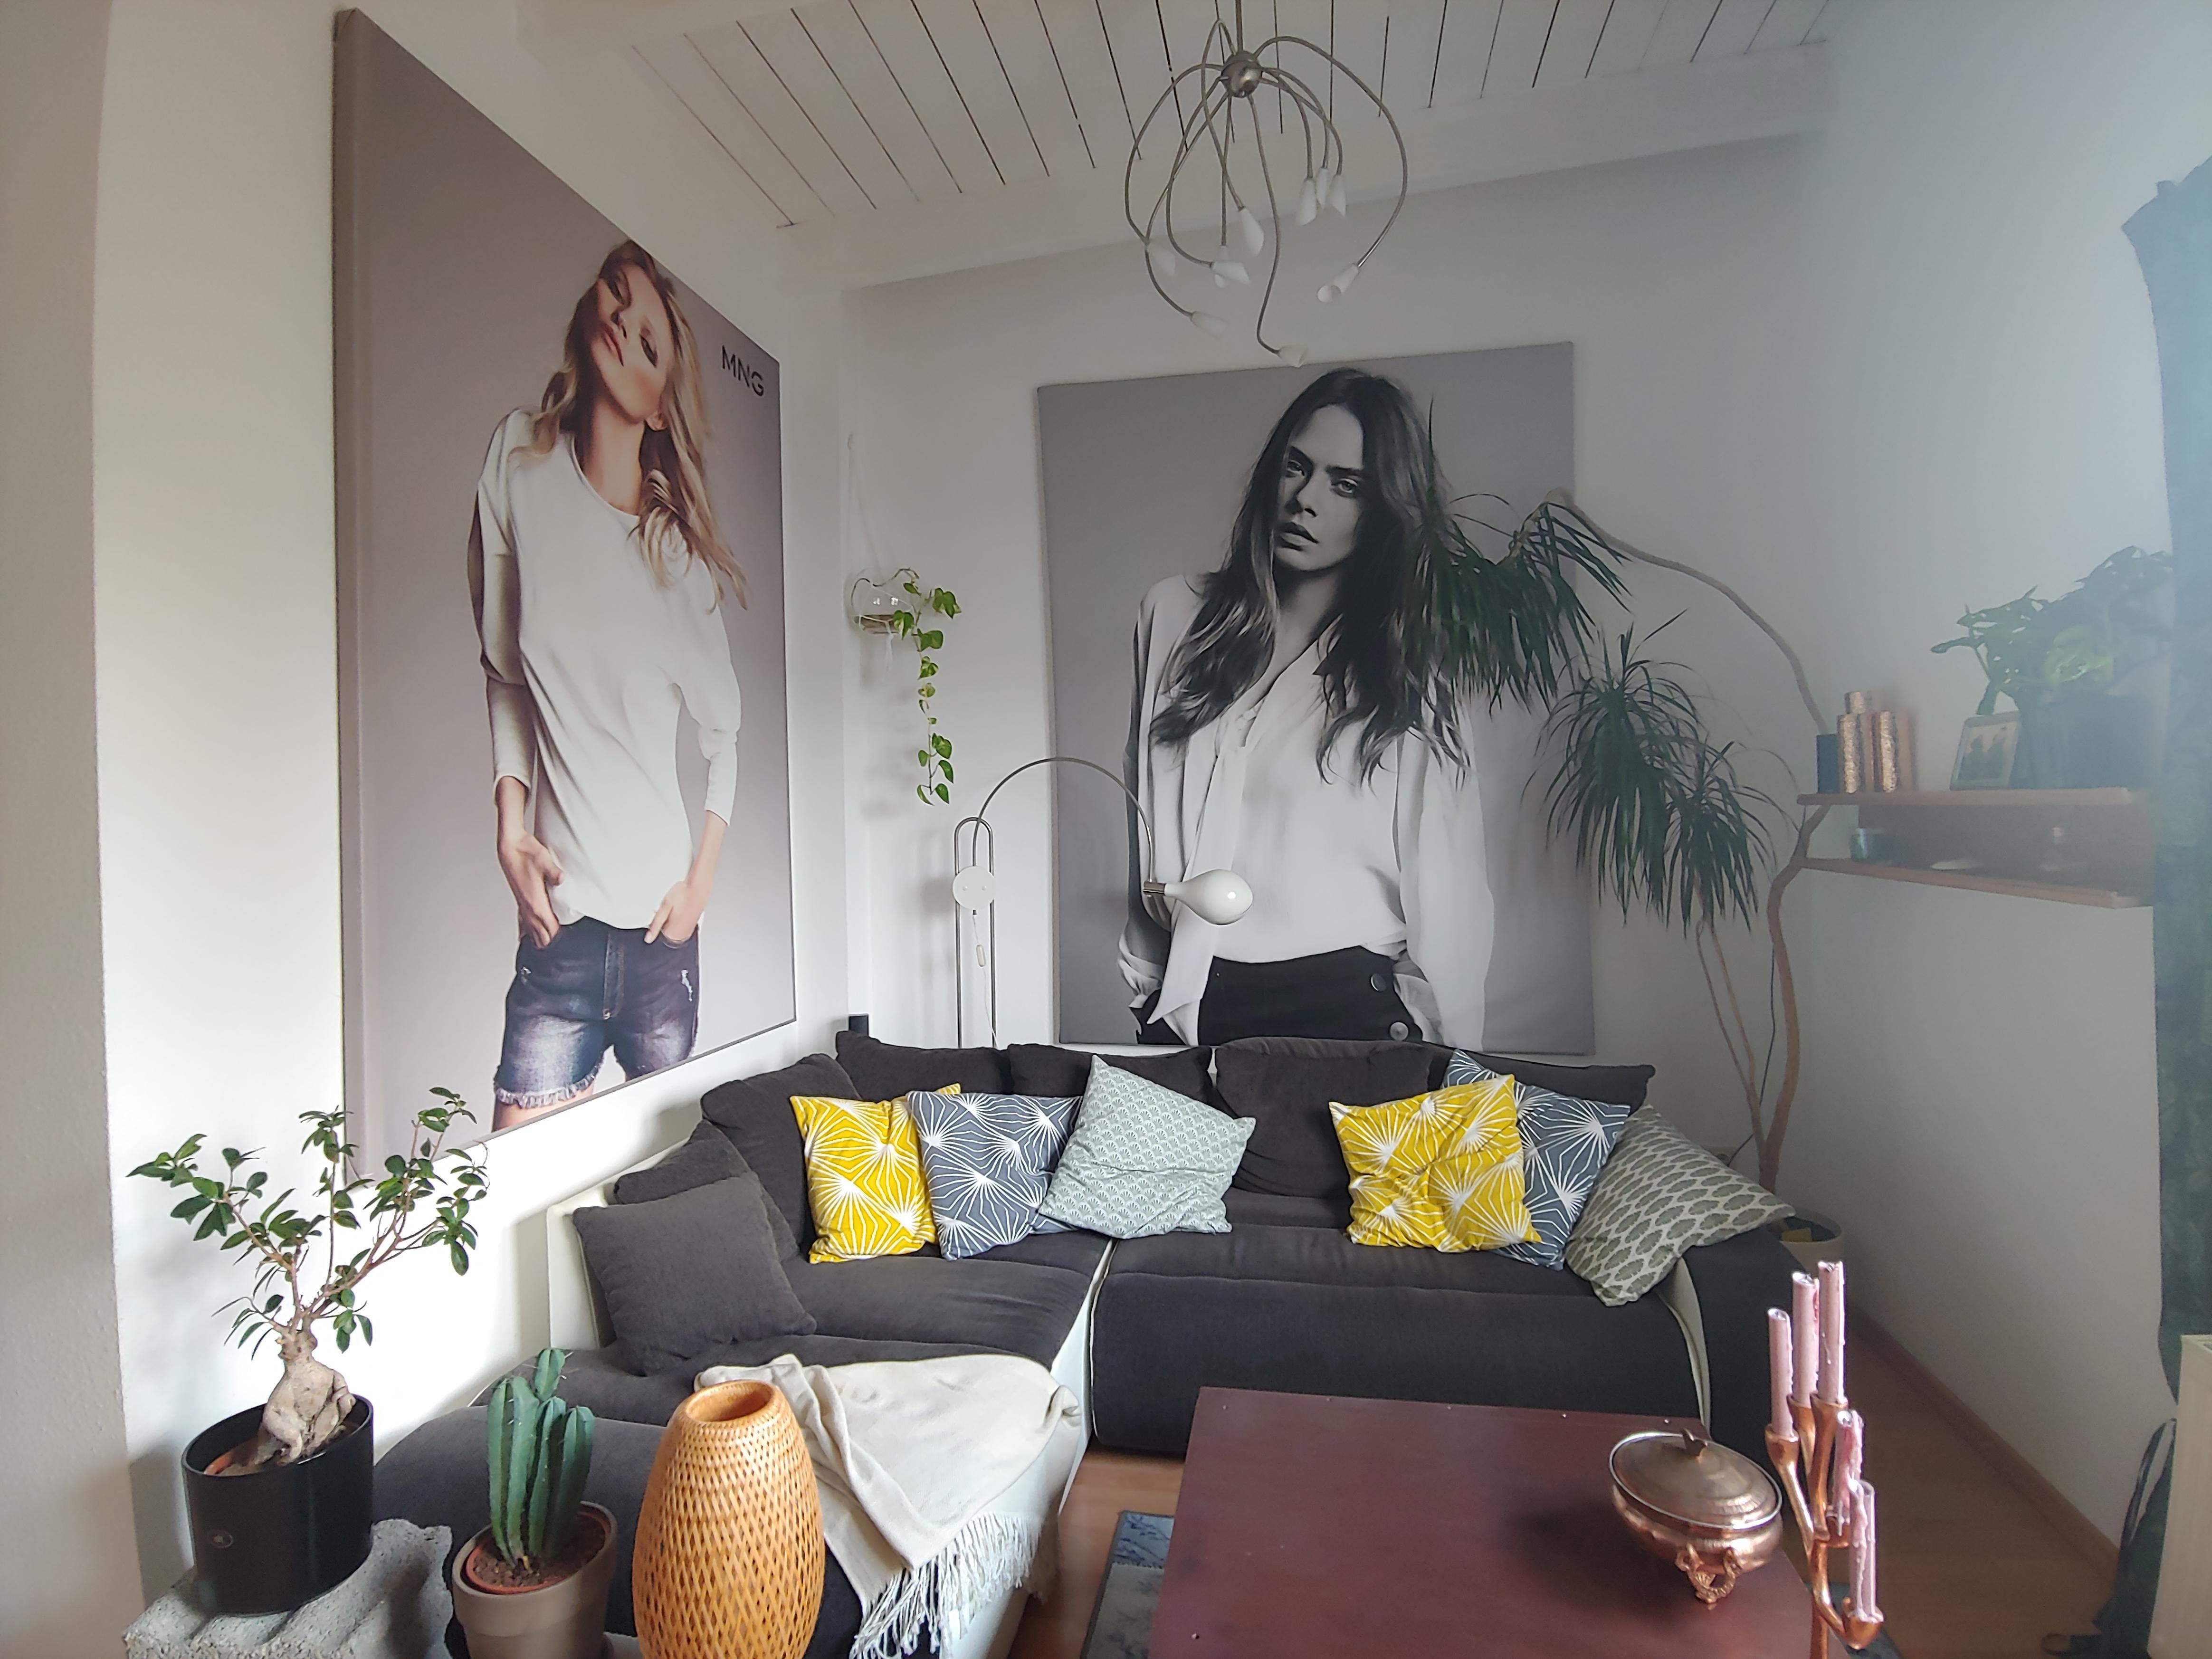 Livingchallenge
#wohnzimmergestaltung
Liebe die hohen Decken aus Holz